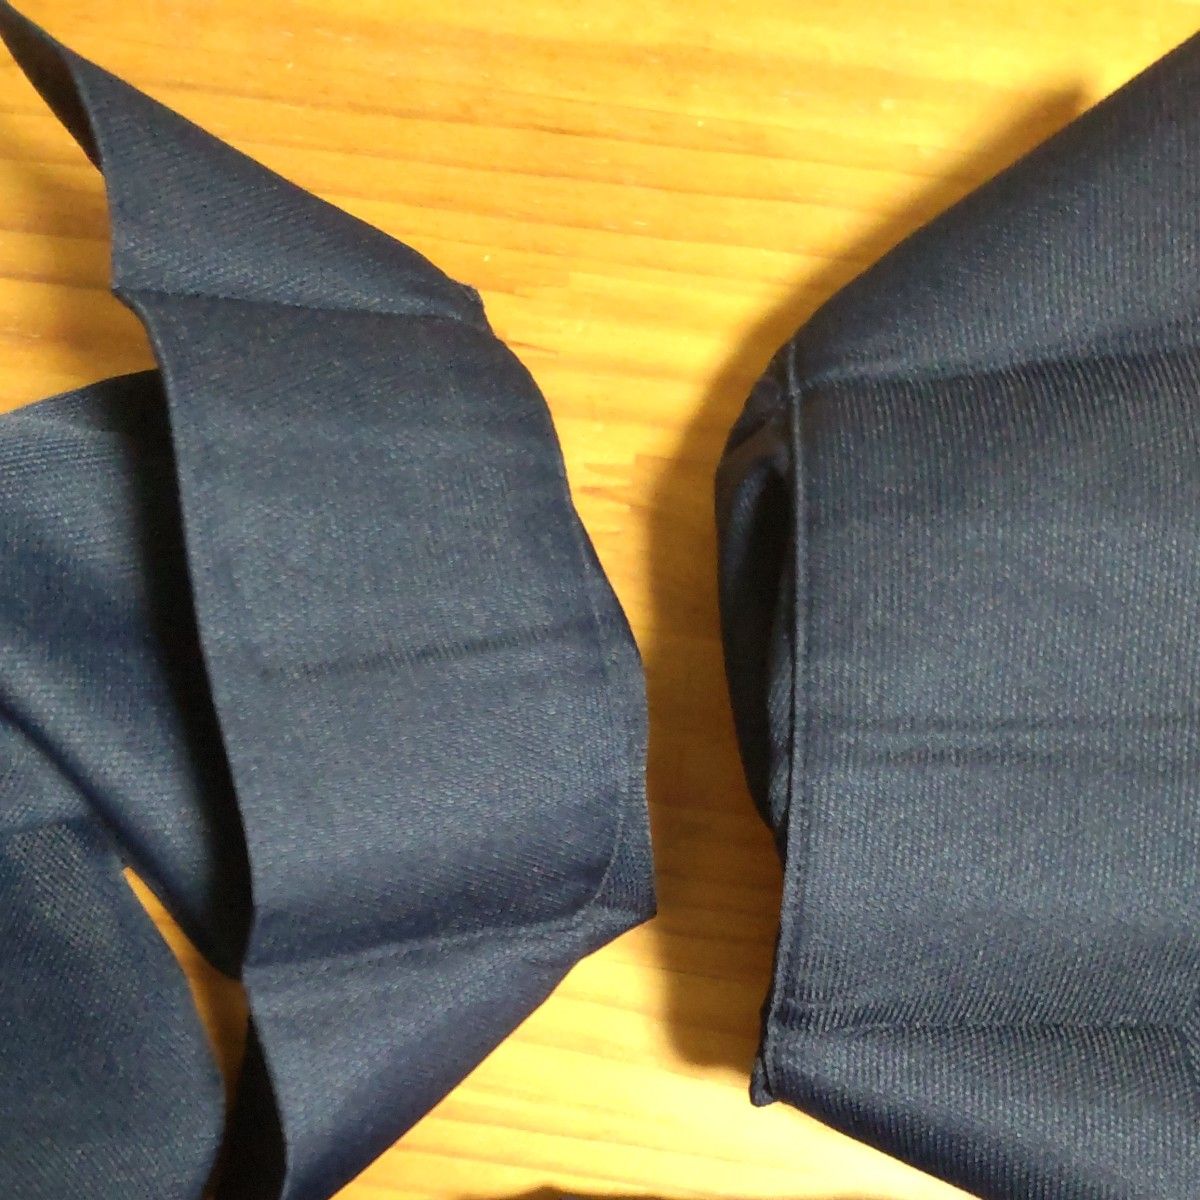 ユニチカ  サラクール糸 使用   スキッパー衿  シャツ  L～LLサイズ  濃紺  洗濯機可  試着のみ  美品